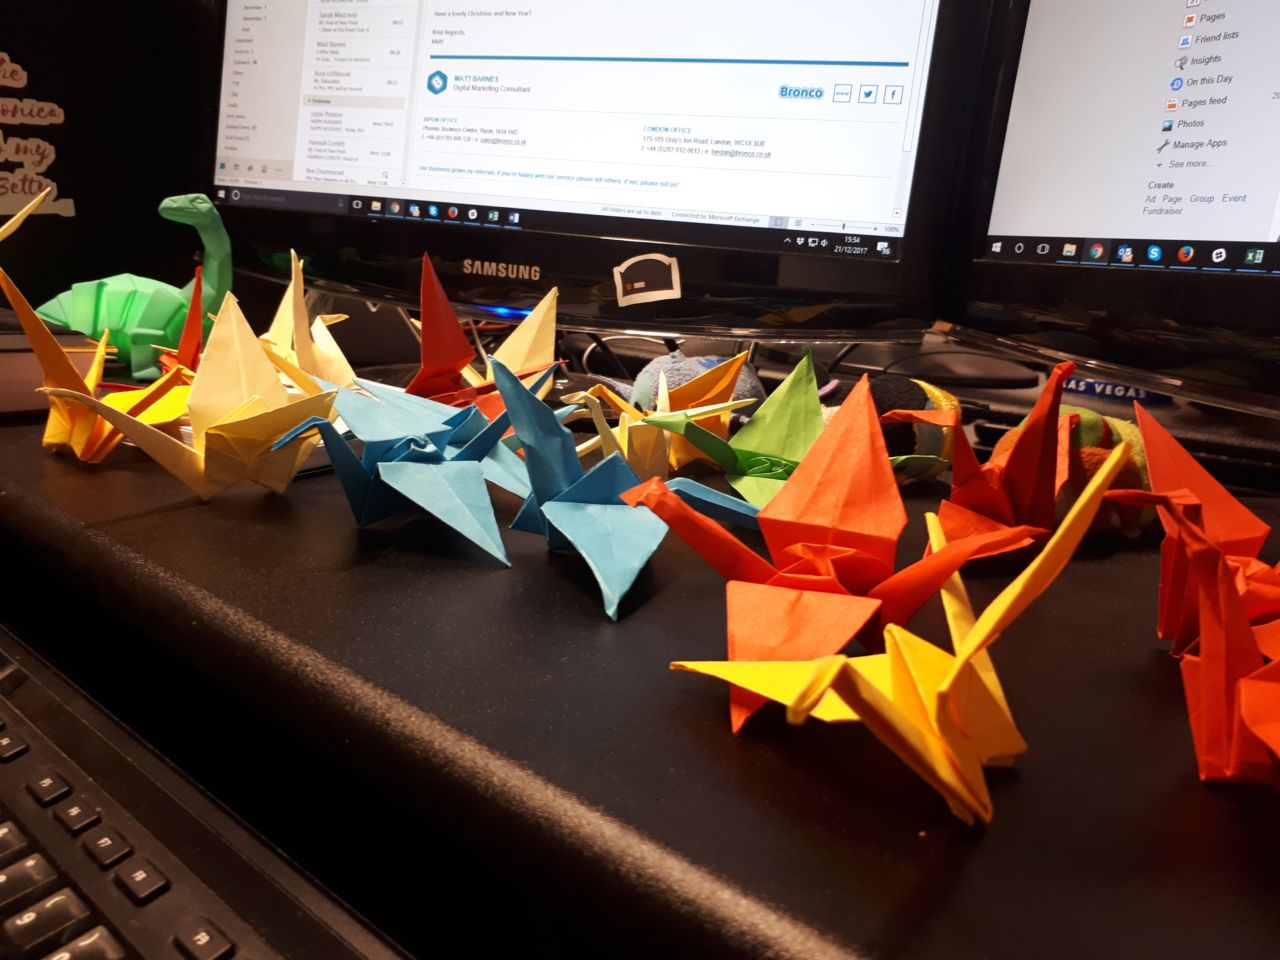 Paper cranes